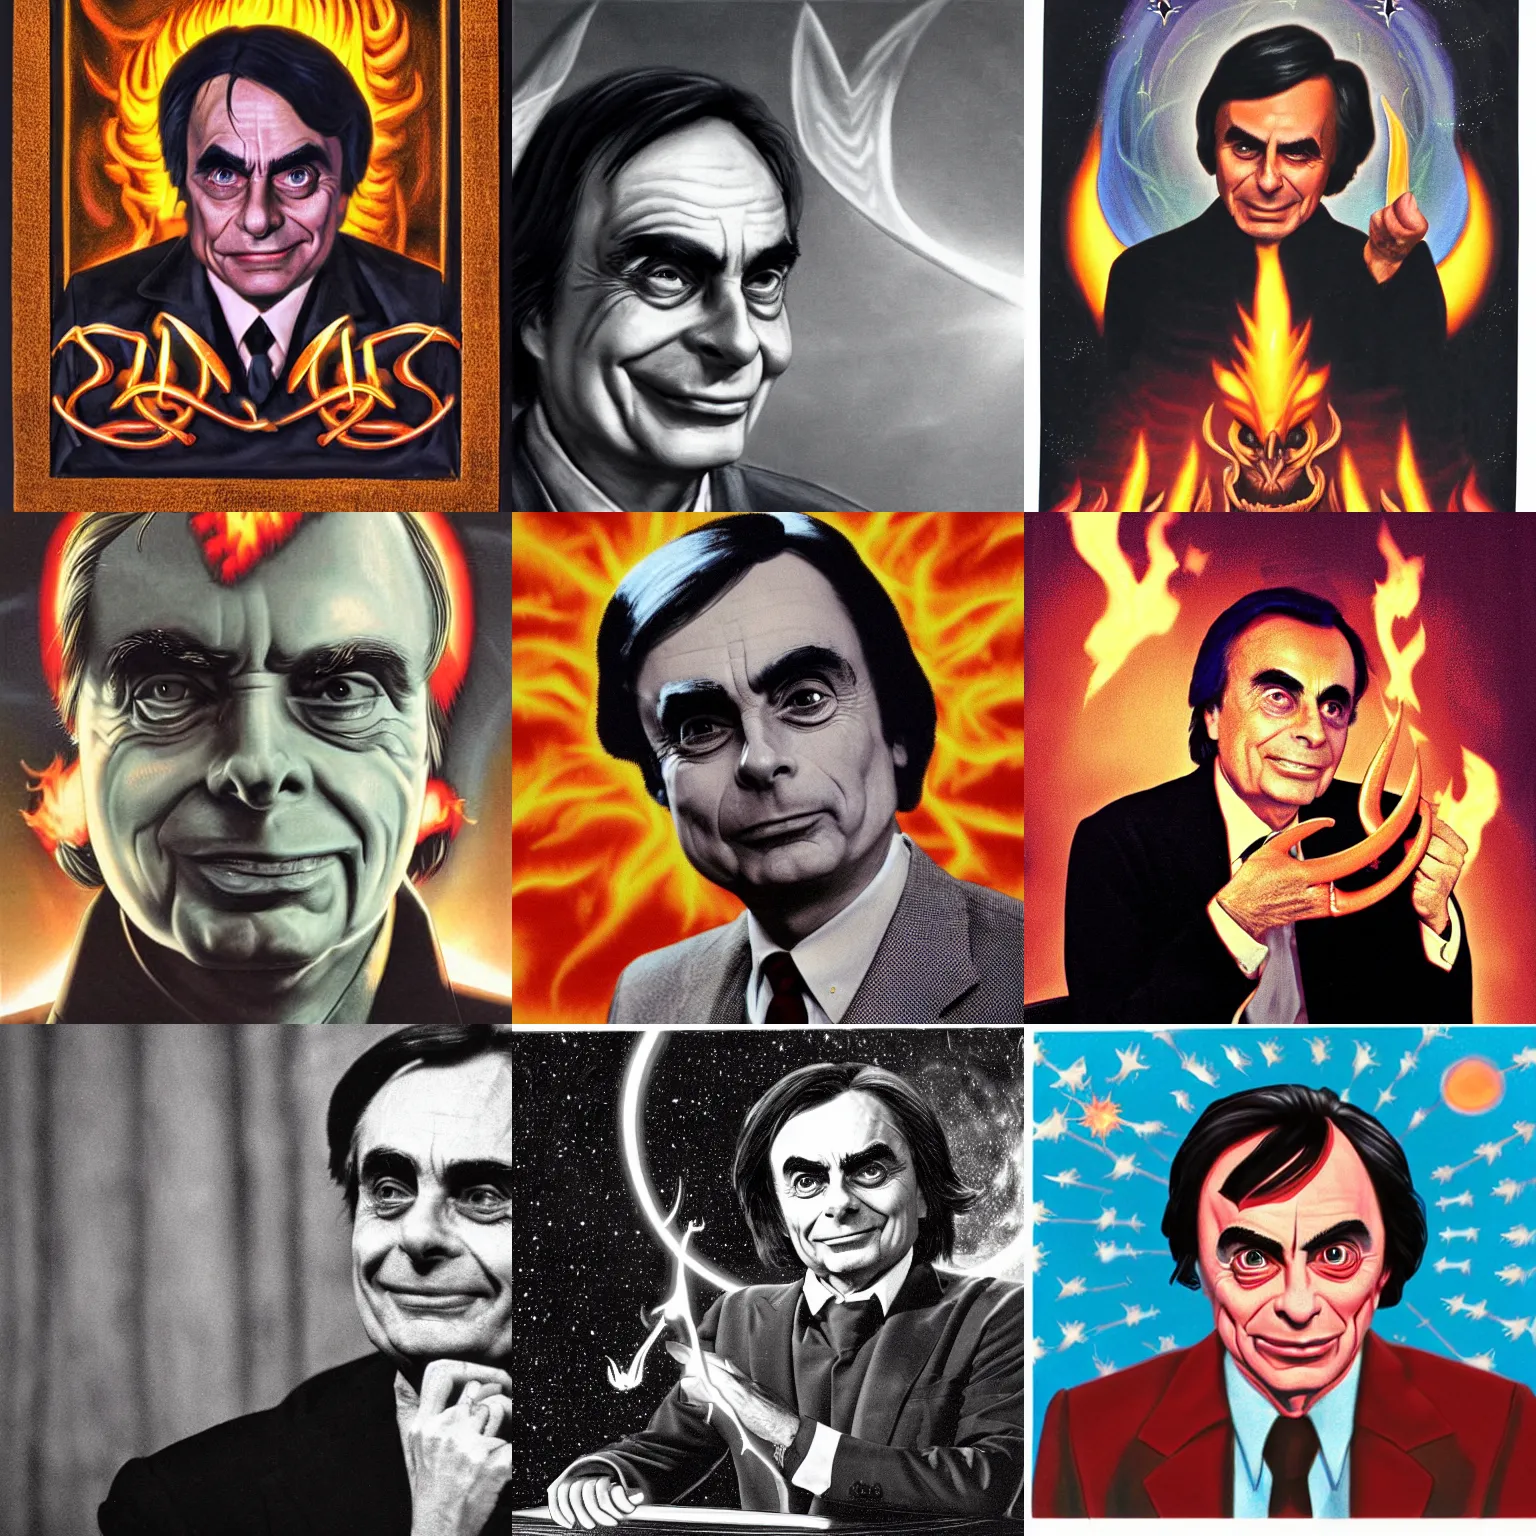 Prompt: Satanic Carl Sagan, portrait. evil. horns. flames. hyper realistic